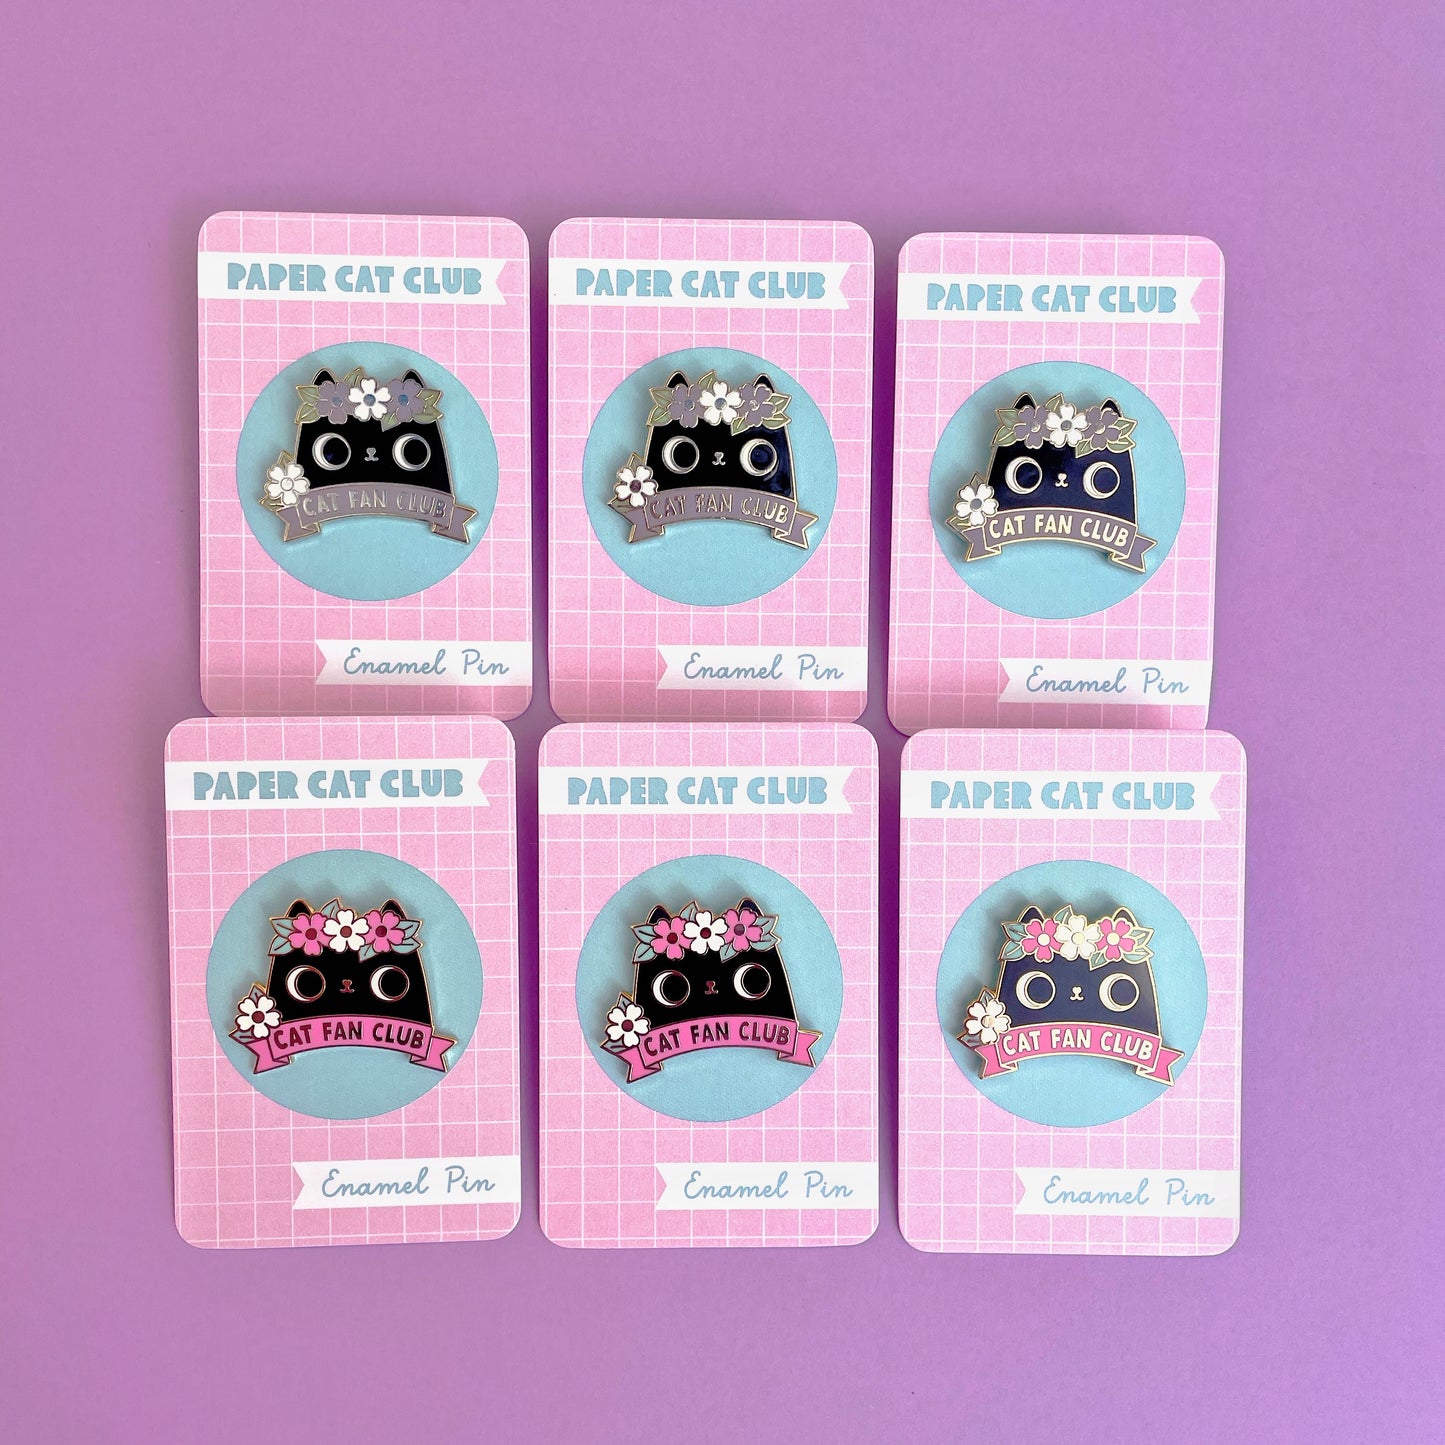 Black Cat Fan Club Enamel Pin Badge, hard enamel pin - super kawaii cute pin badge